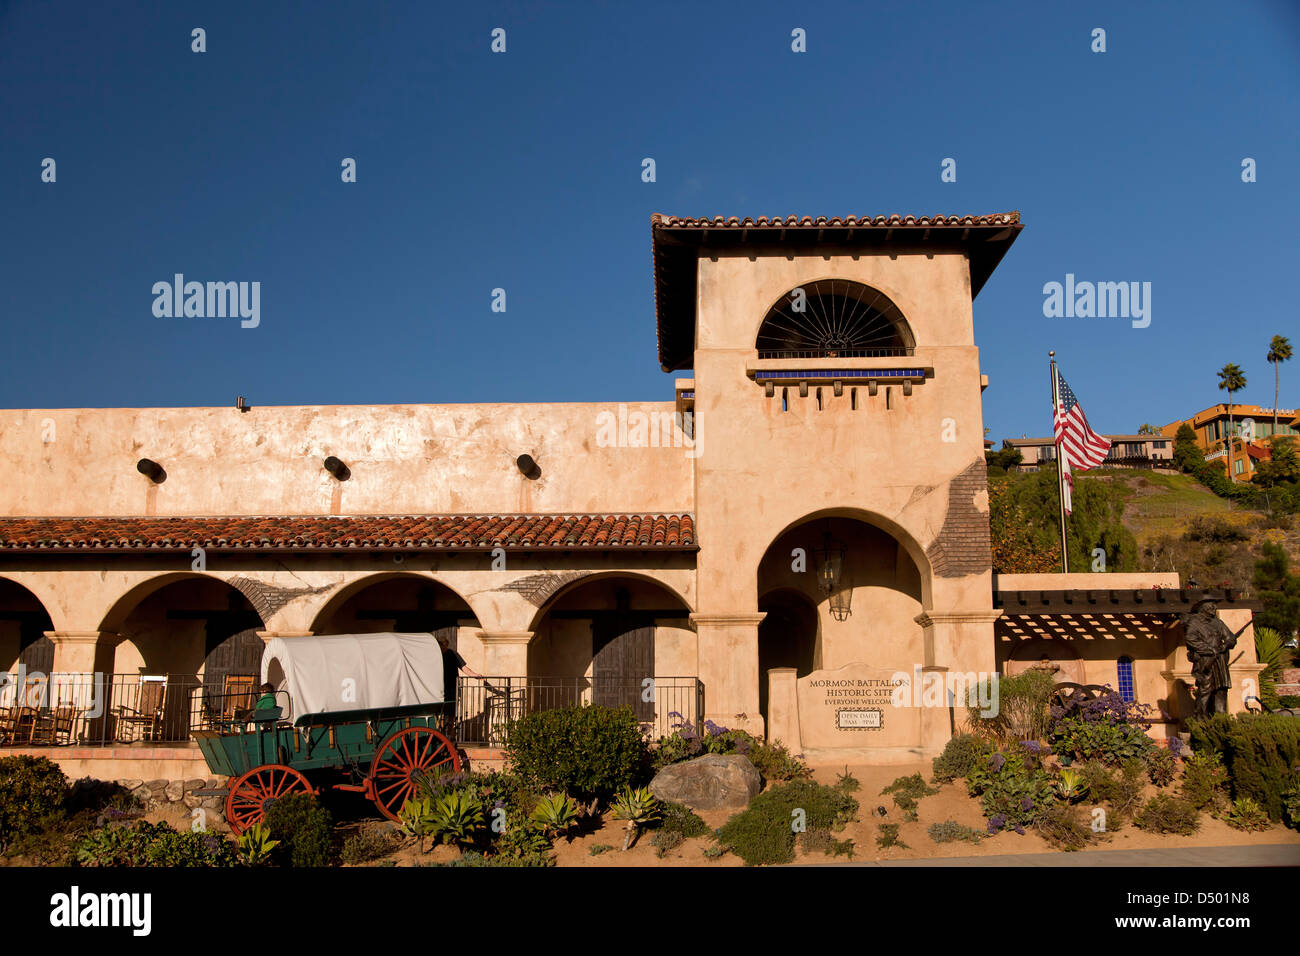 Mormone-Bataillon historische Stätte und Besucherzentrum, Old Town State Park, San Diego, Kalifornien, Vereinigte Staaten von Amerika, USA Stockfoto